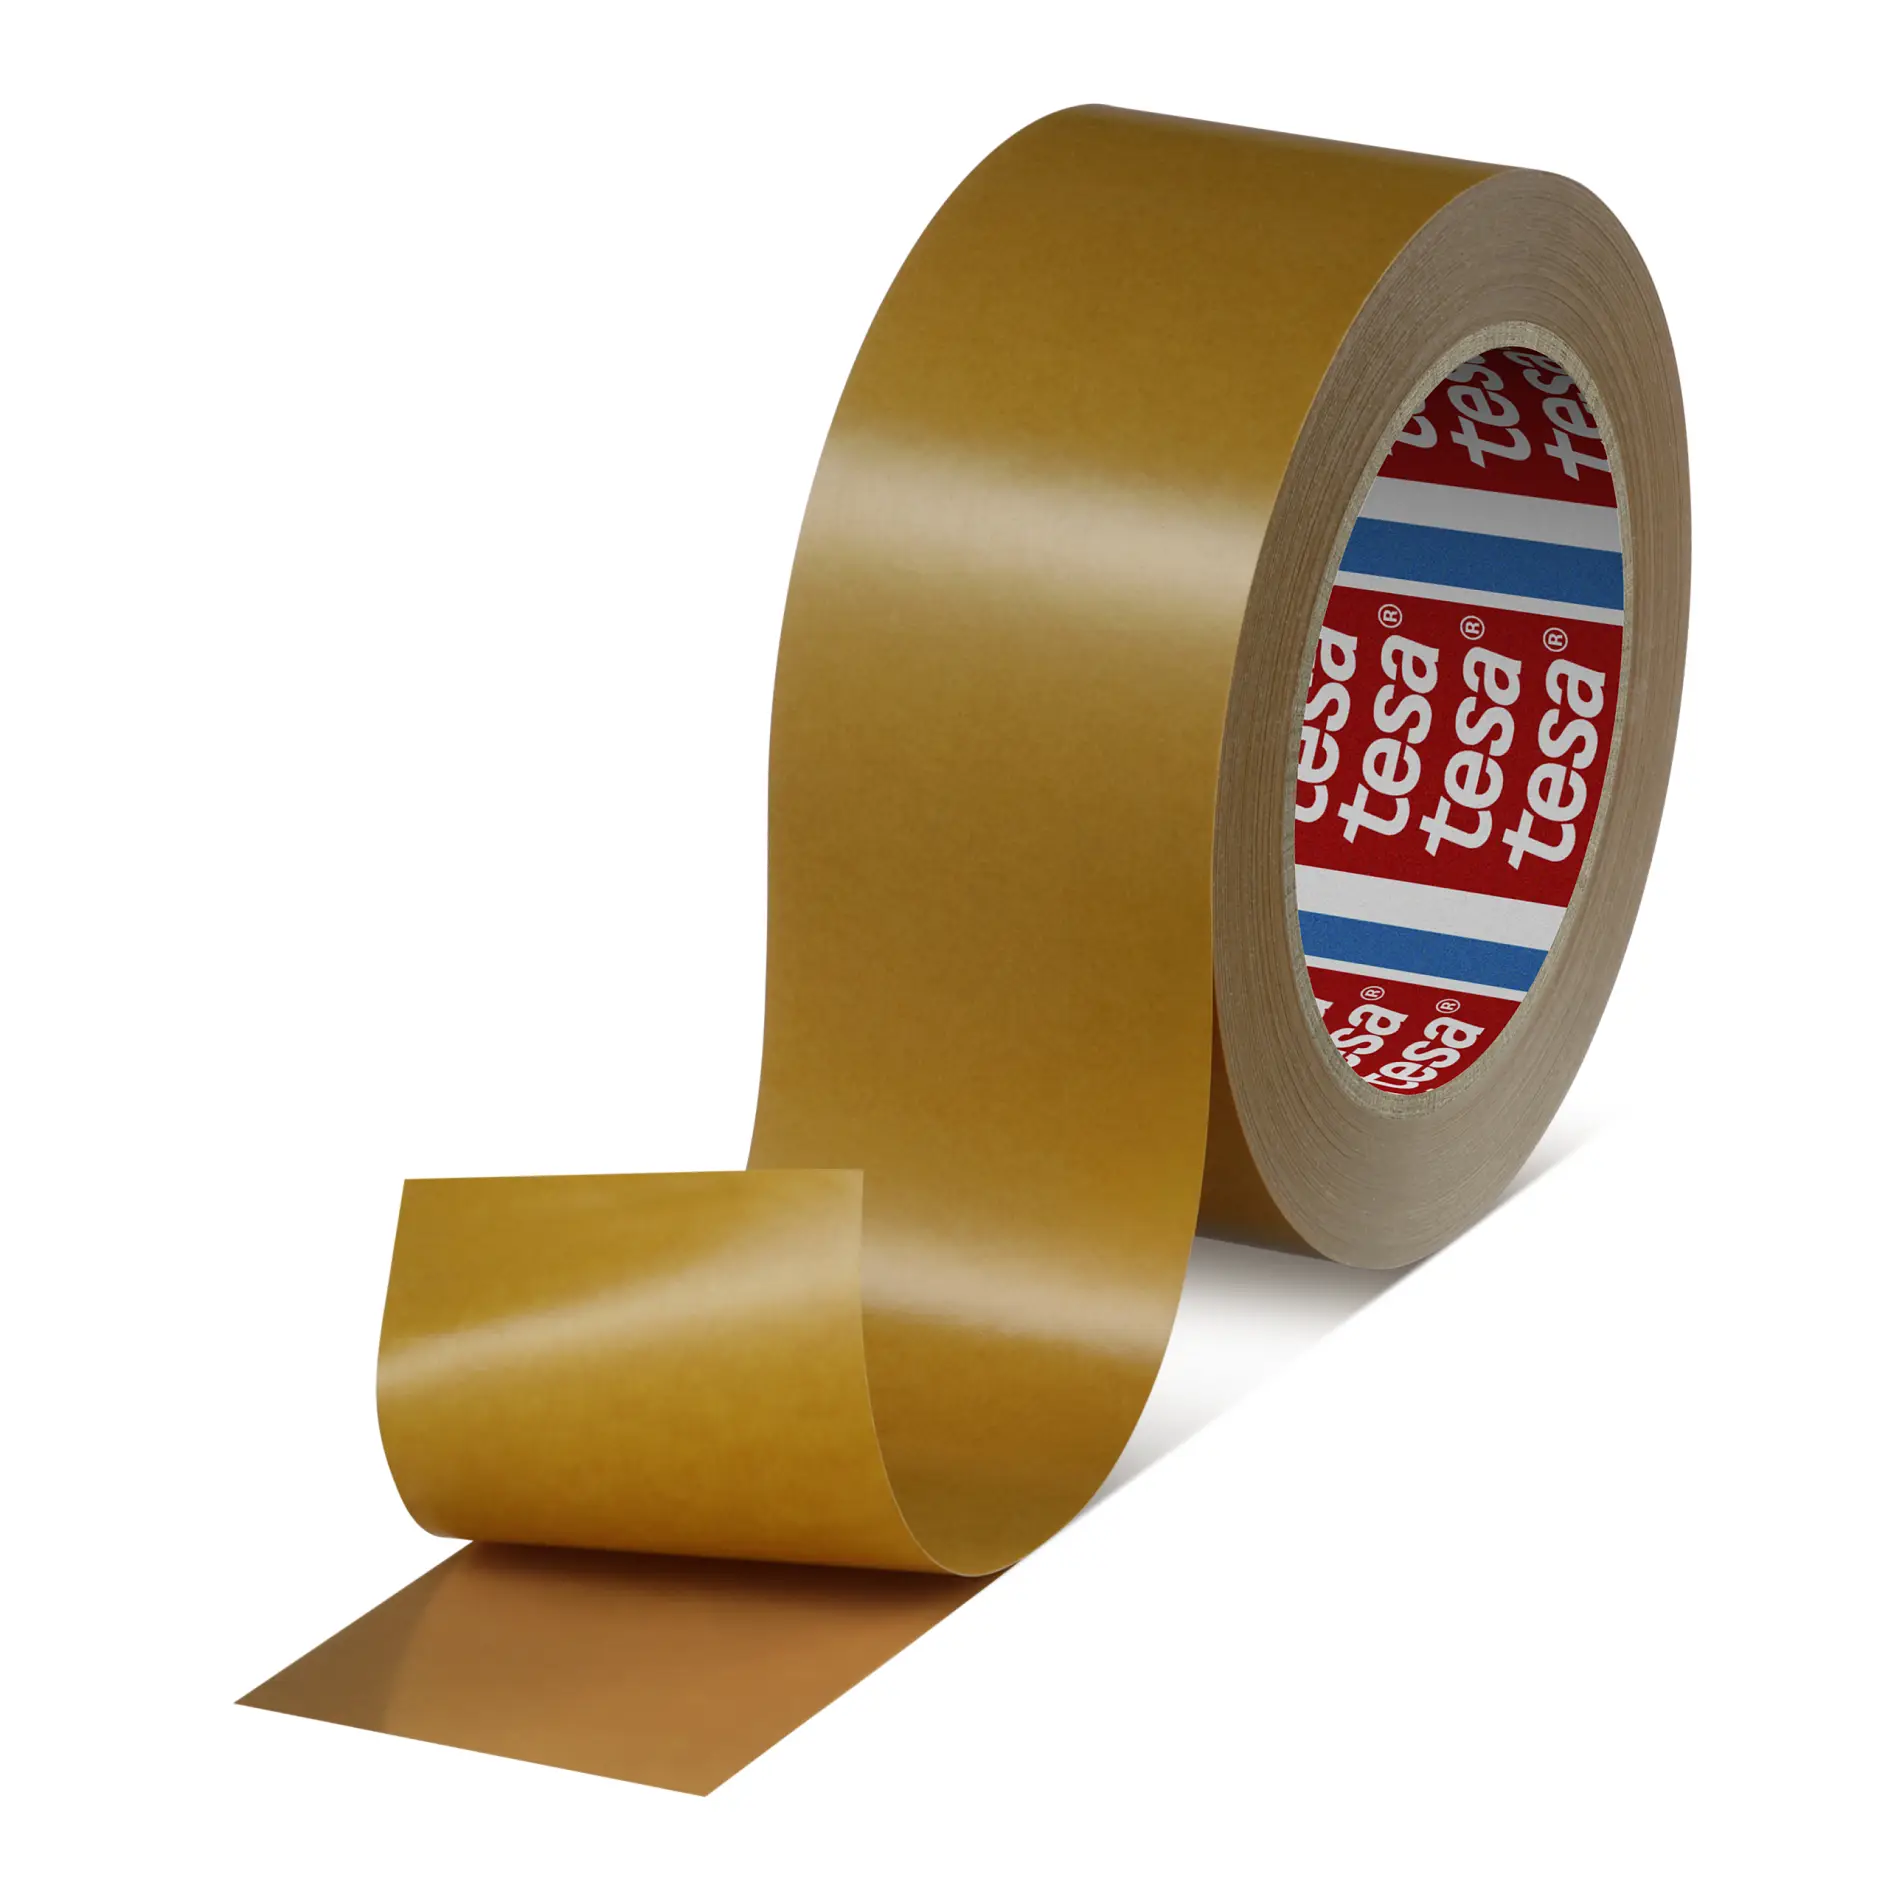 tesa-haf-8402-125-amber-reactive-mounting-tape-brown-084020001100-pr